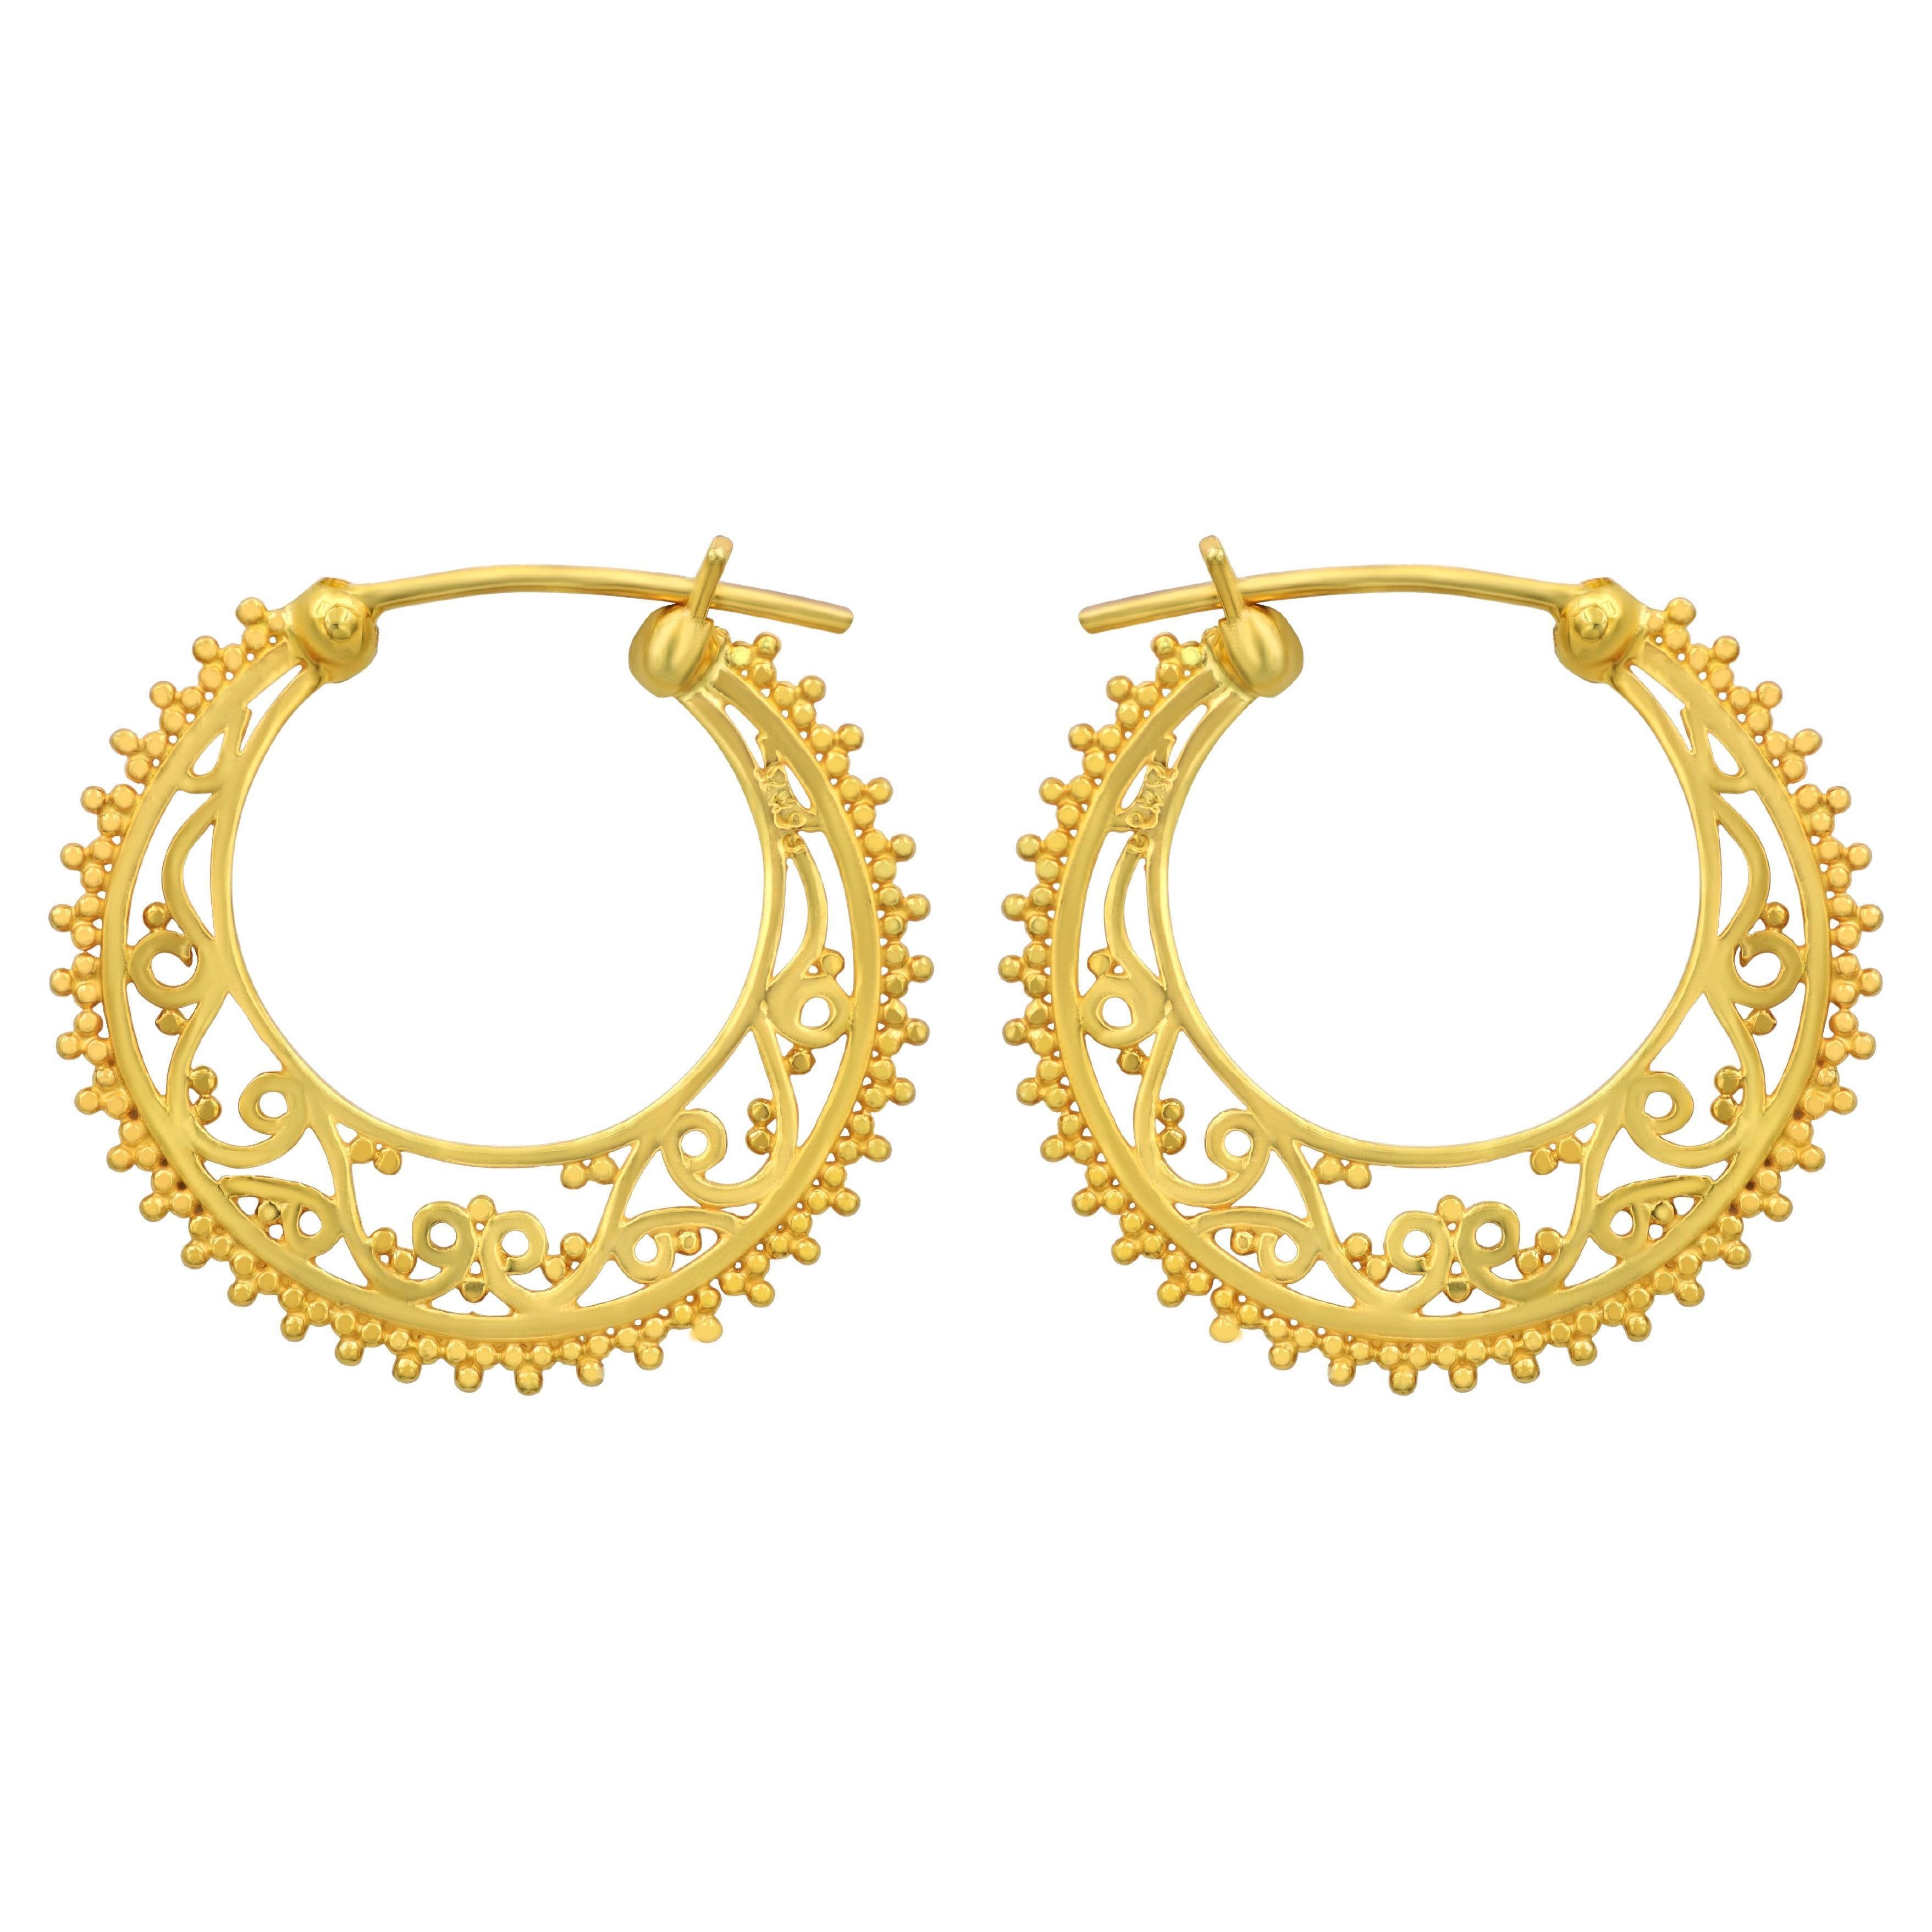 Dimos 18k Gold Filigree Hoops Earrings